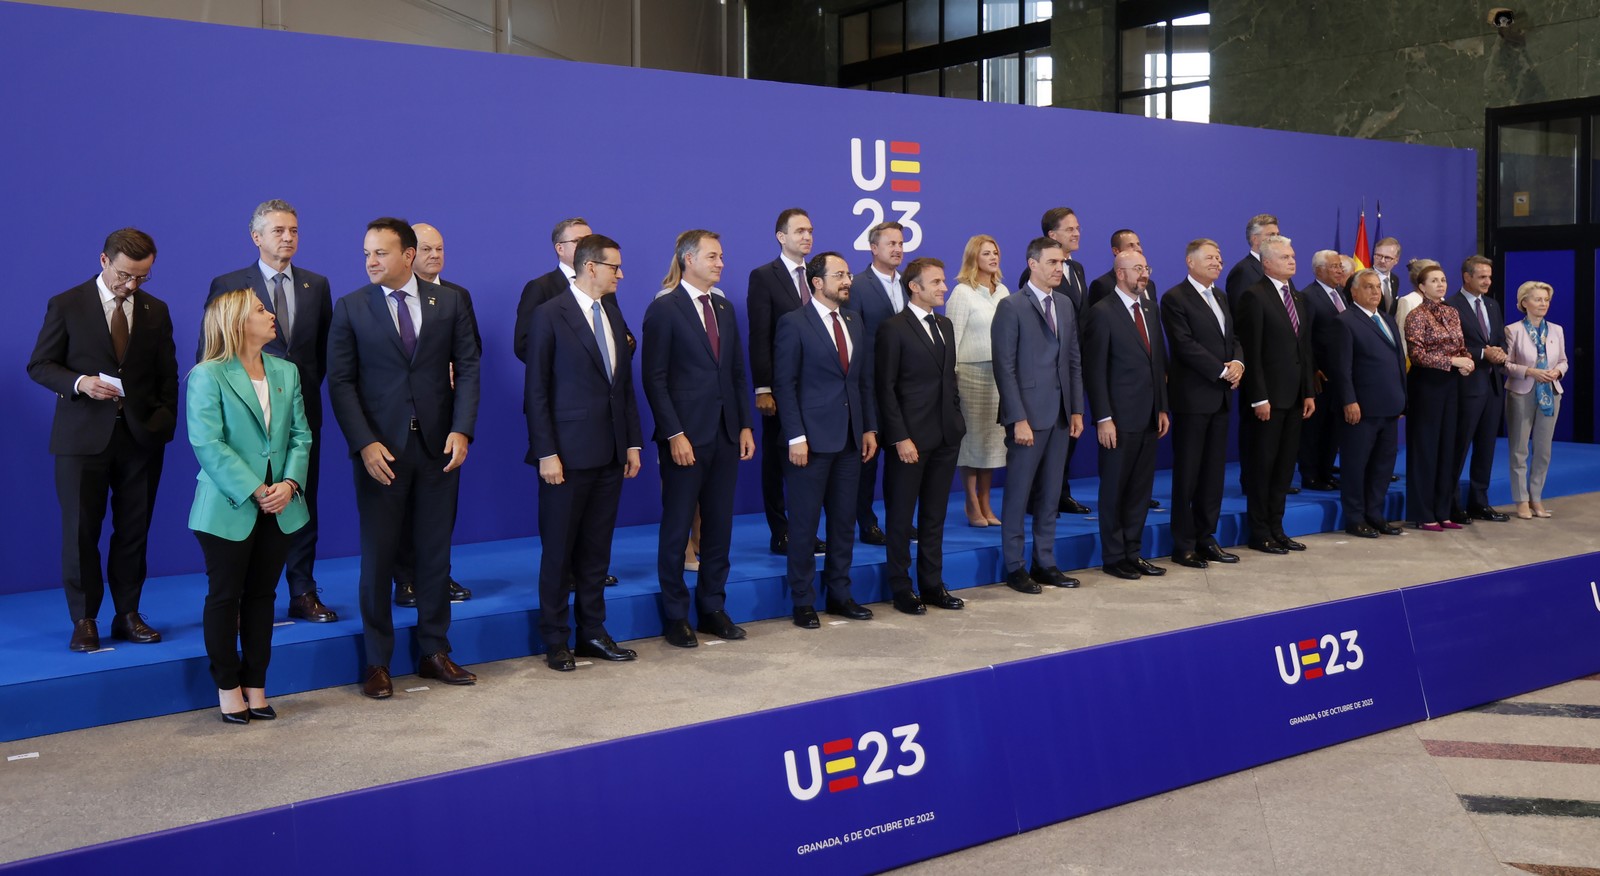 Άτυπη Σύνοδος Κορυφής της ΕΕ στη Γρανάδα